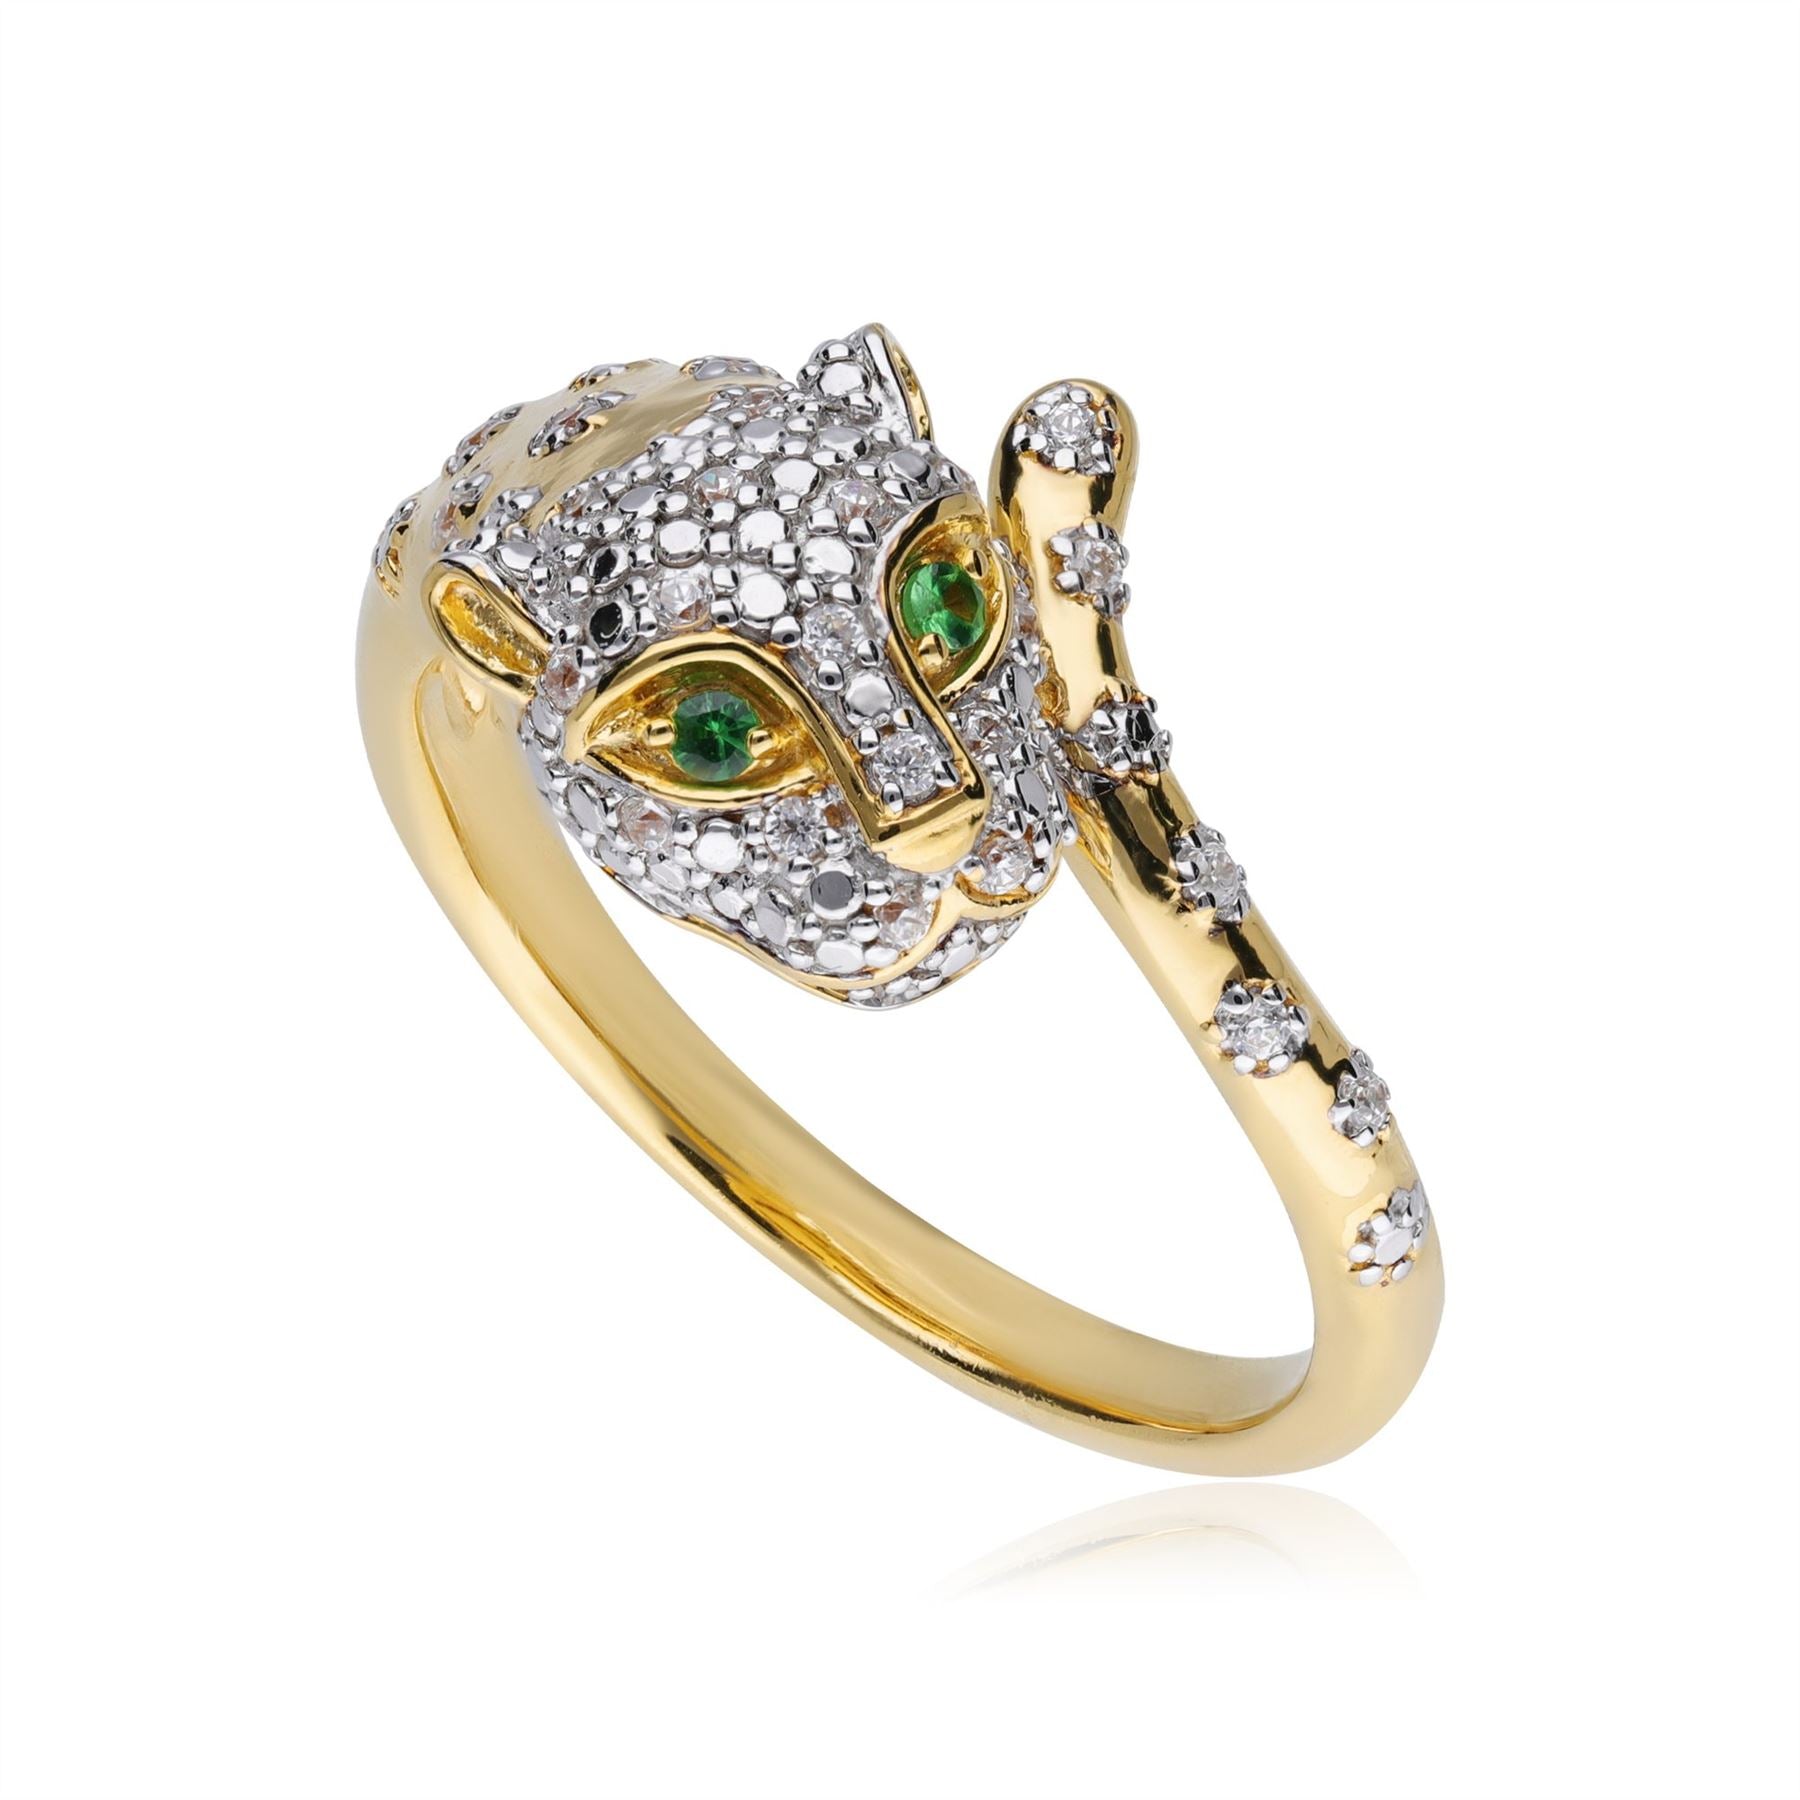 ECFEW™ "The Unifier" Anello ghepardo con tsavorite e diamanti in oro giallo da 9 ct